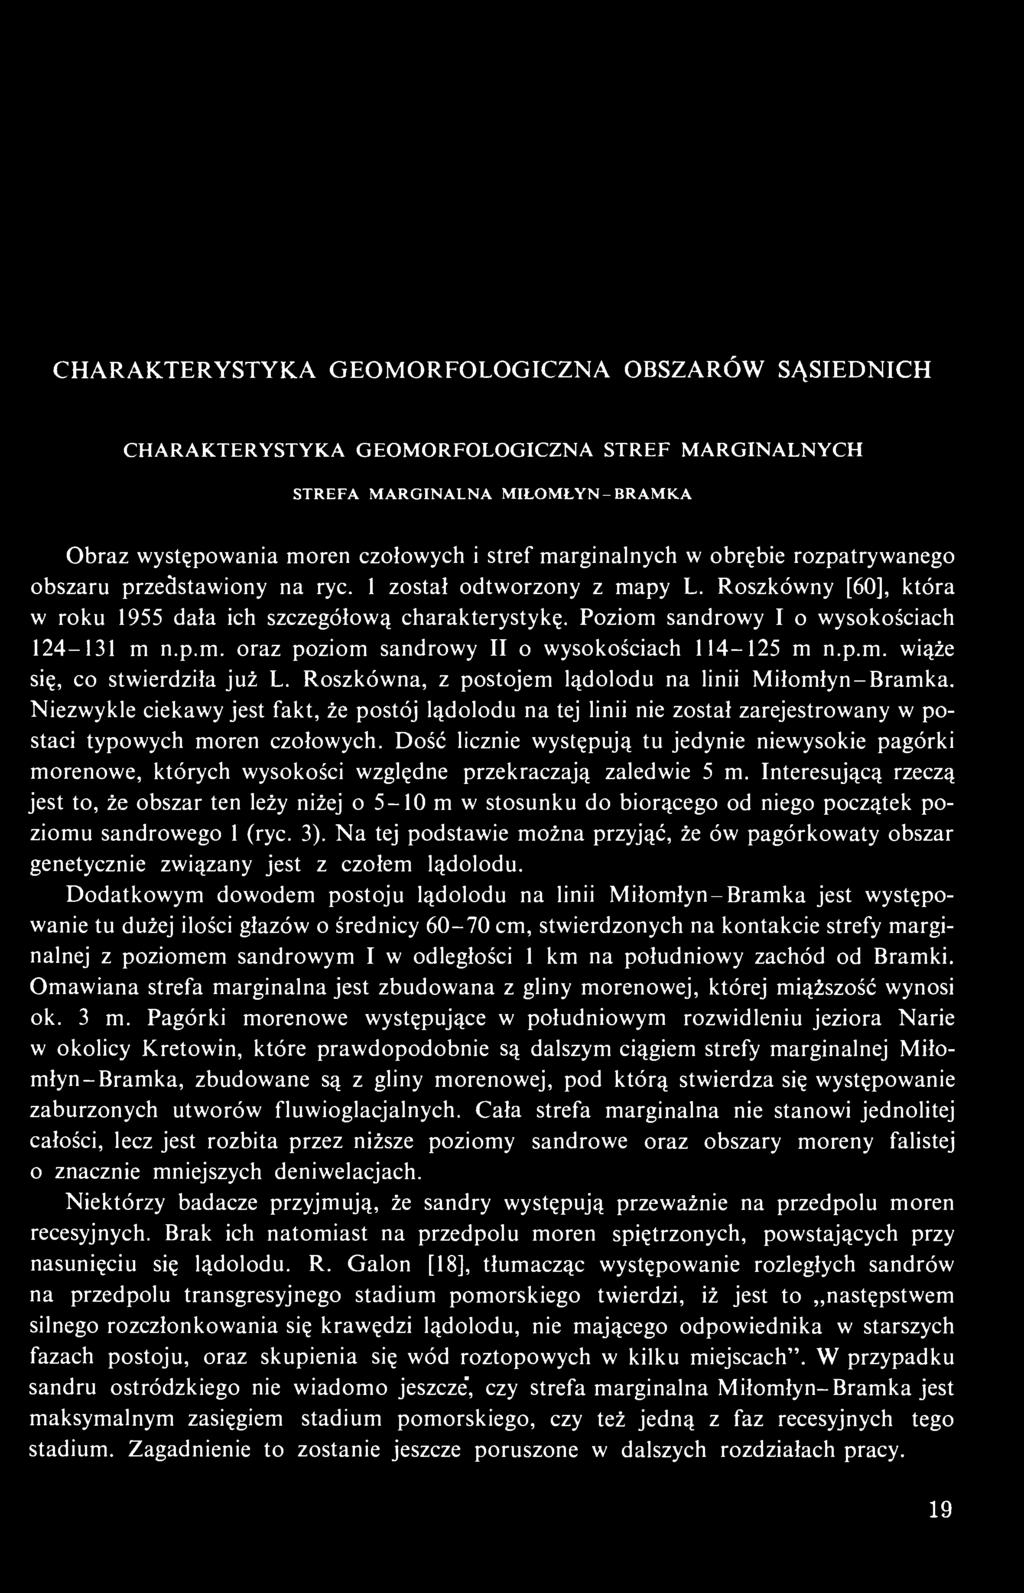 p.m. oraz poziom sandrowy II o wysokościach 114-125 m n.p.m. wiąże się, co stwierdziła już L. Roszkówna, z postojem lądolodu na linii Miłomłyn-Bramka.